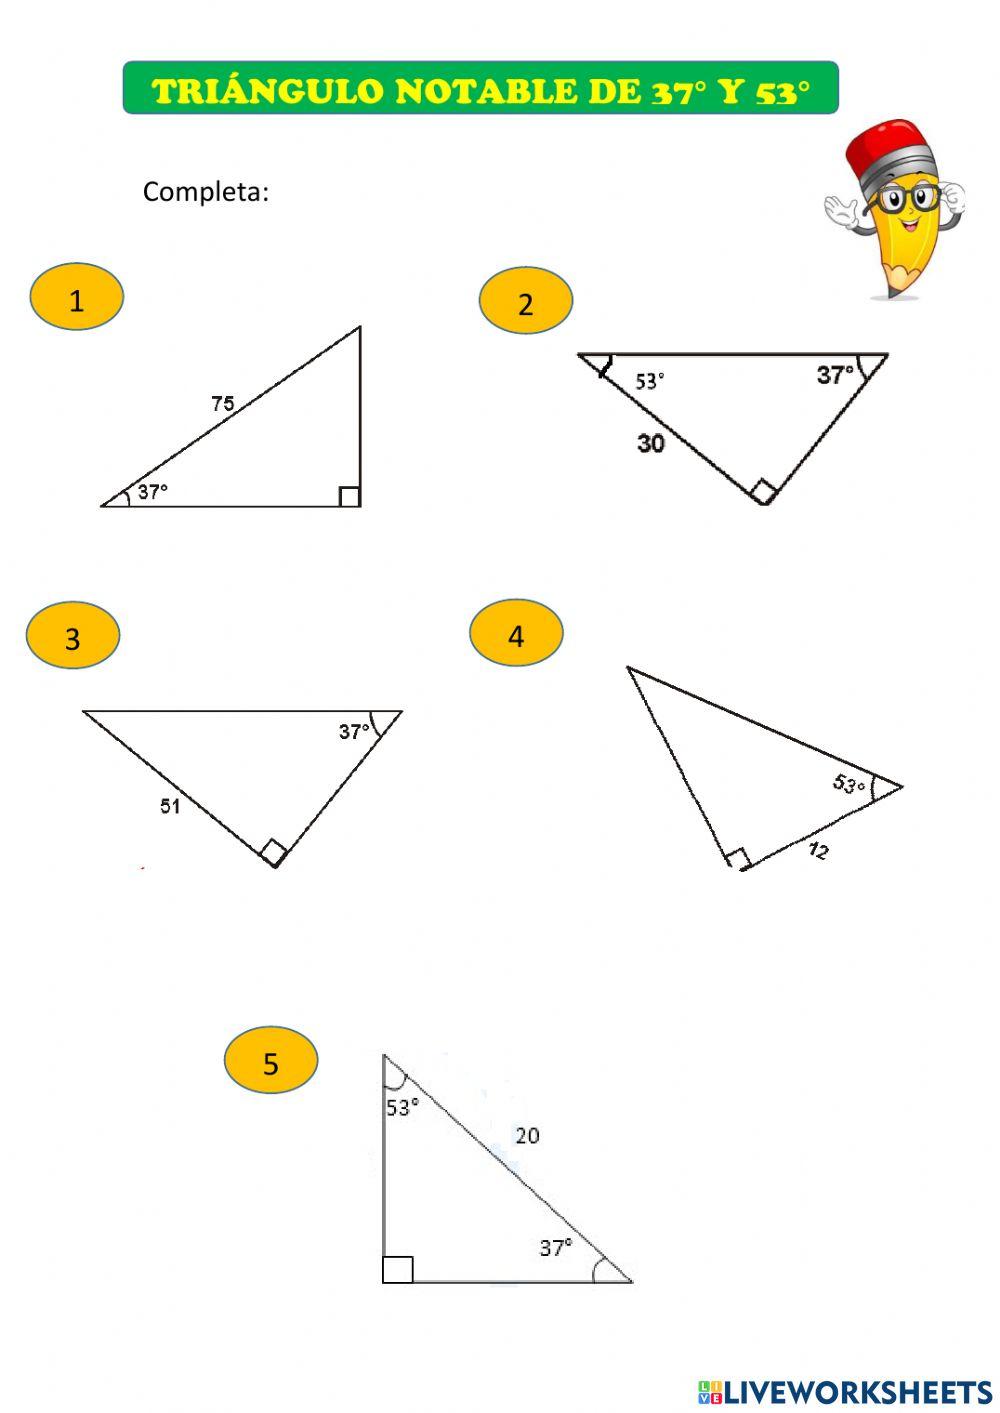 Triangulo notable de 37 y 53